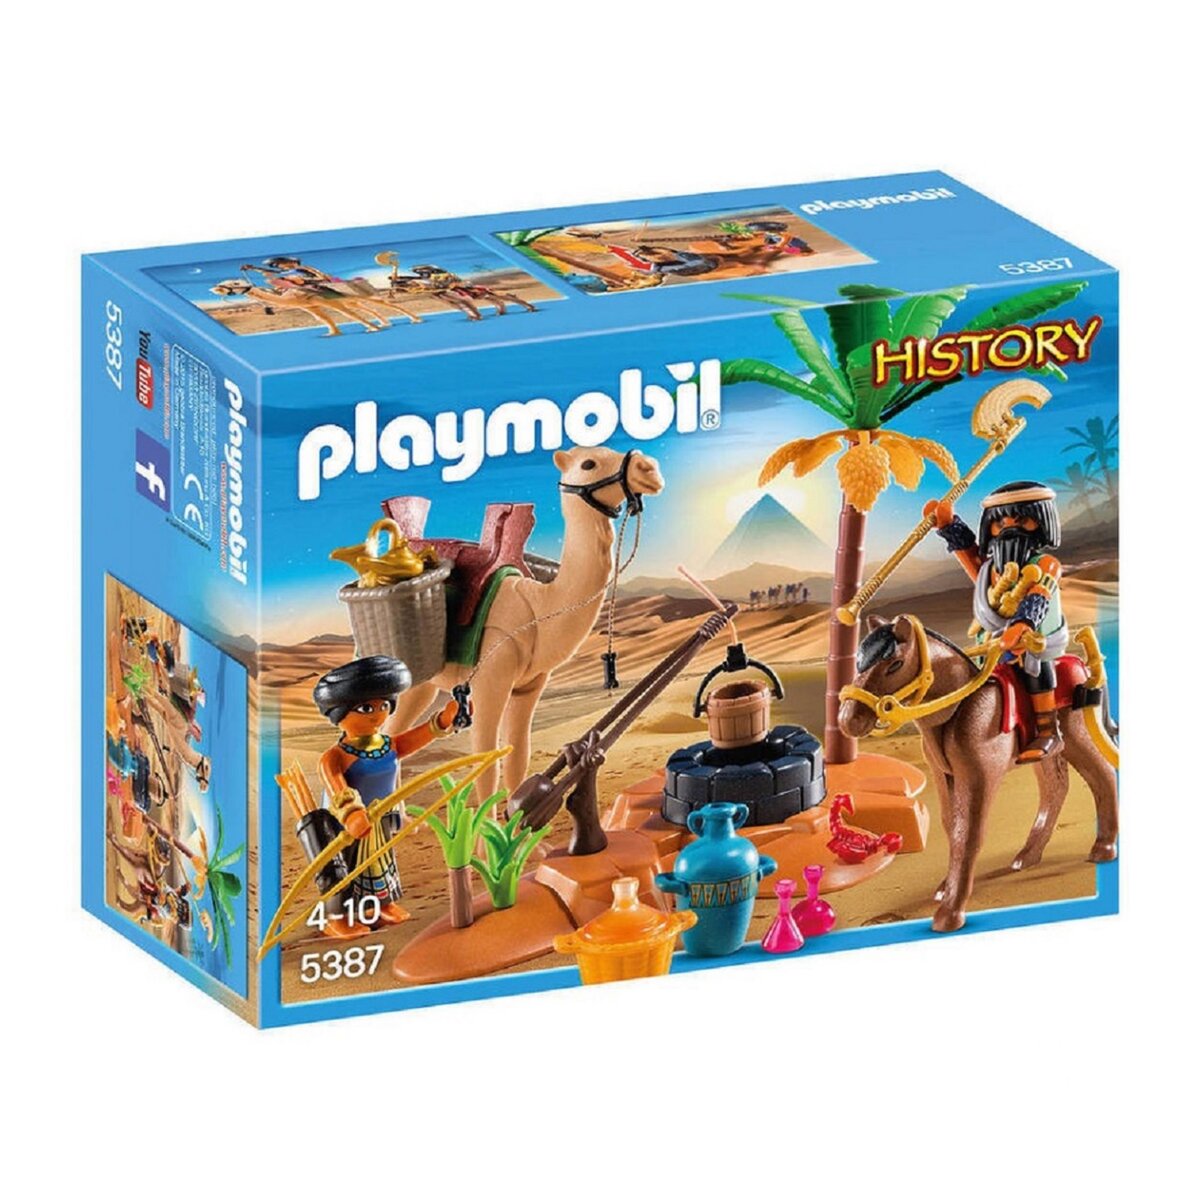 PLAYMOBIL 5387 - History - Pilleurs égyptiens avec trésor